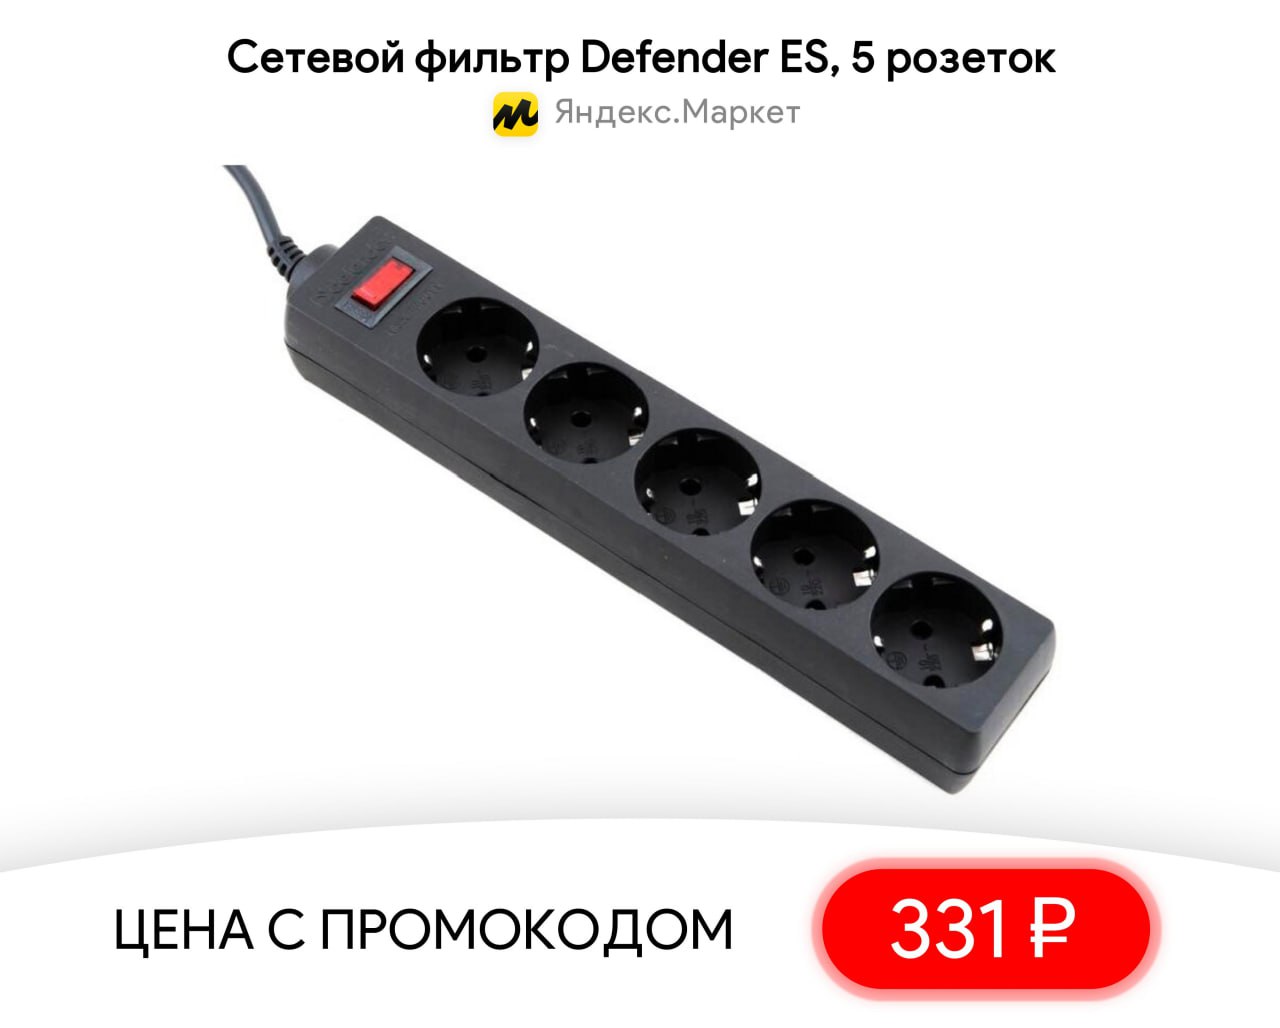 Defender es 5 розеток. Сетевой фильтр Defender es 1.8. Сетевой фильтр Defender es 1.8 с синим переключателем. Схема сетевого фильтра Defender. Сетевой фильтр Defender с синей кнопкой.